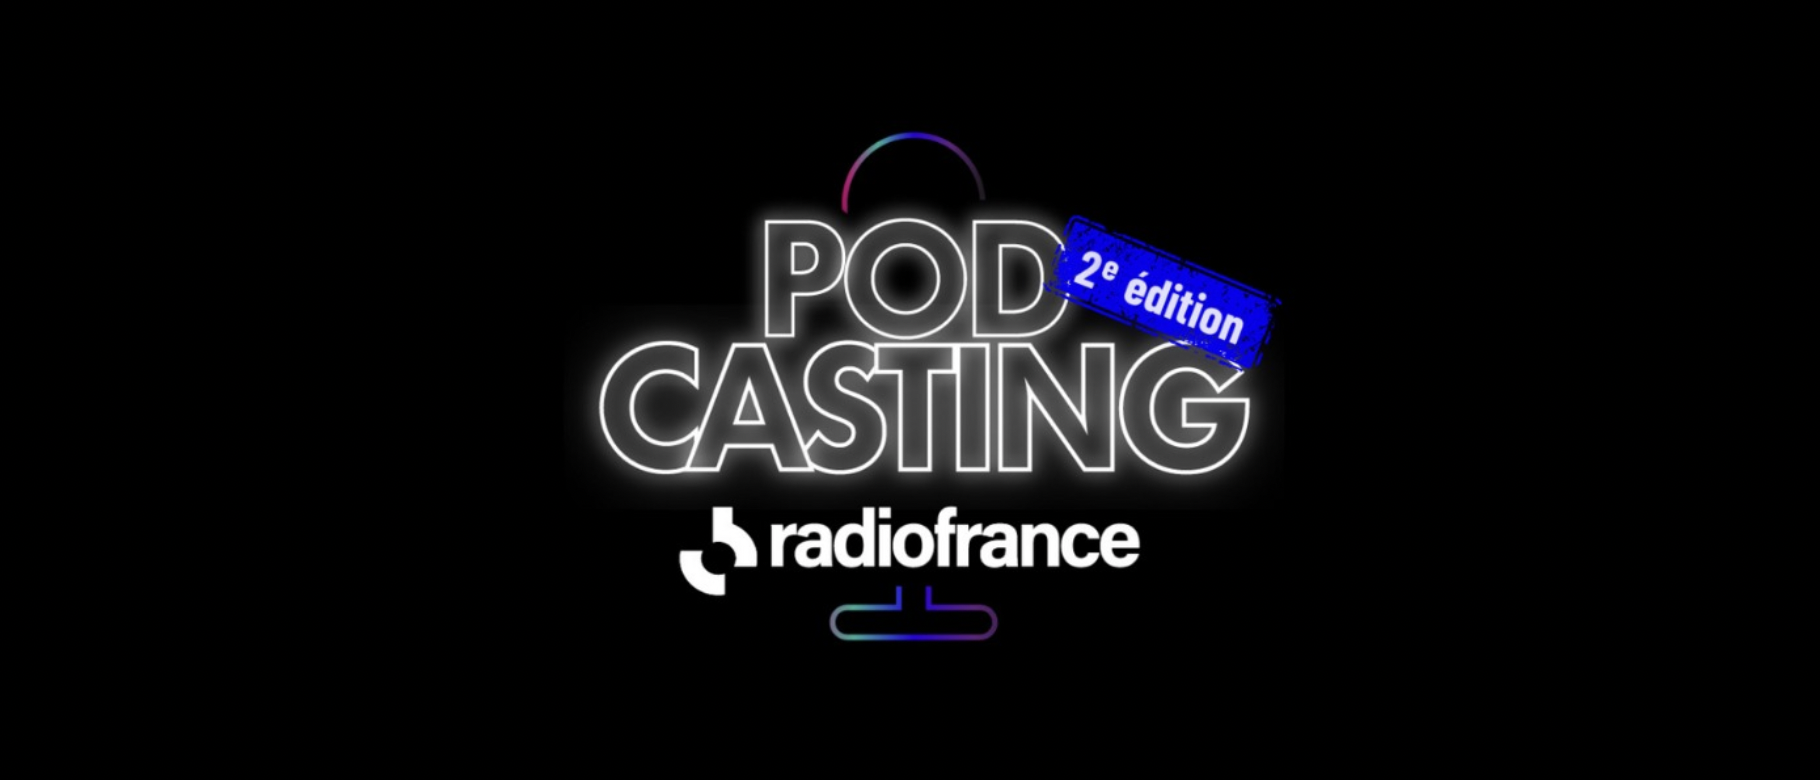 Radio France lance la 2e édition de Pod'casting